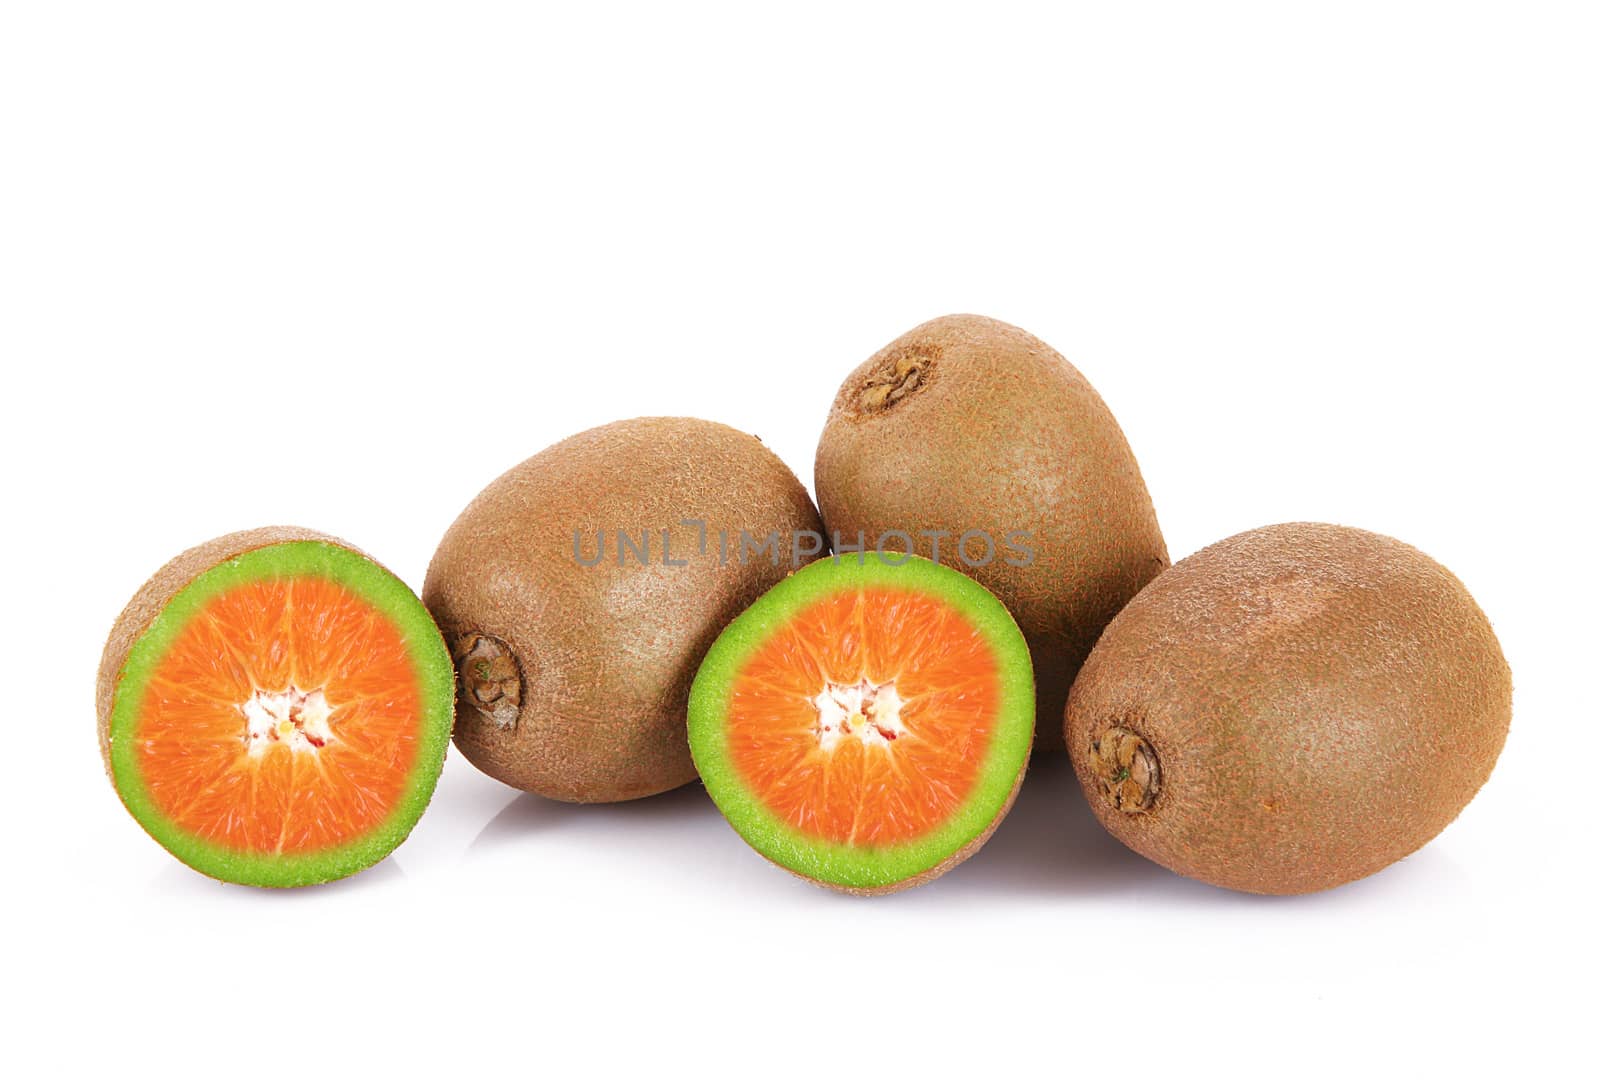 ibrid fruit orange-kiwi by photobeps